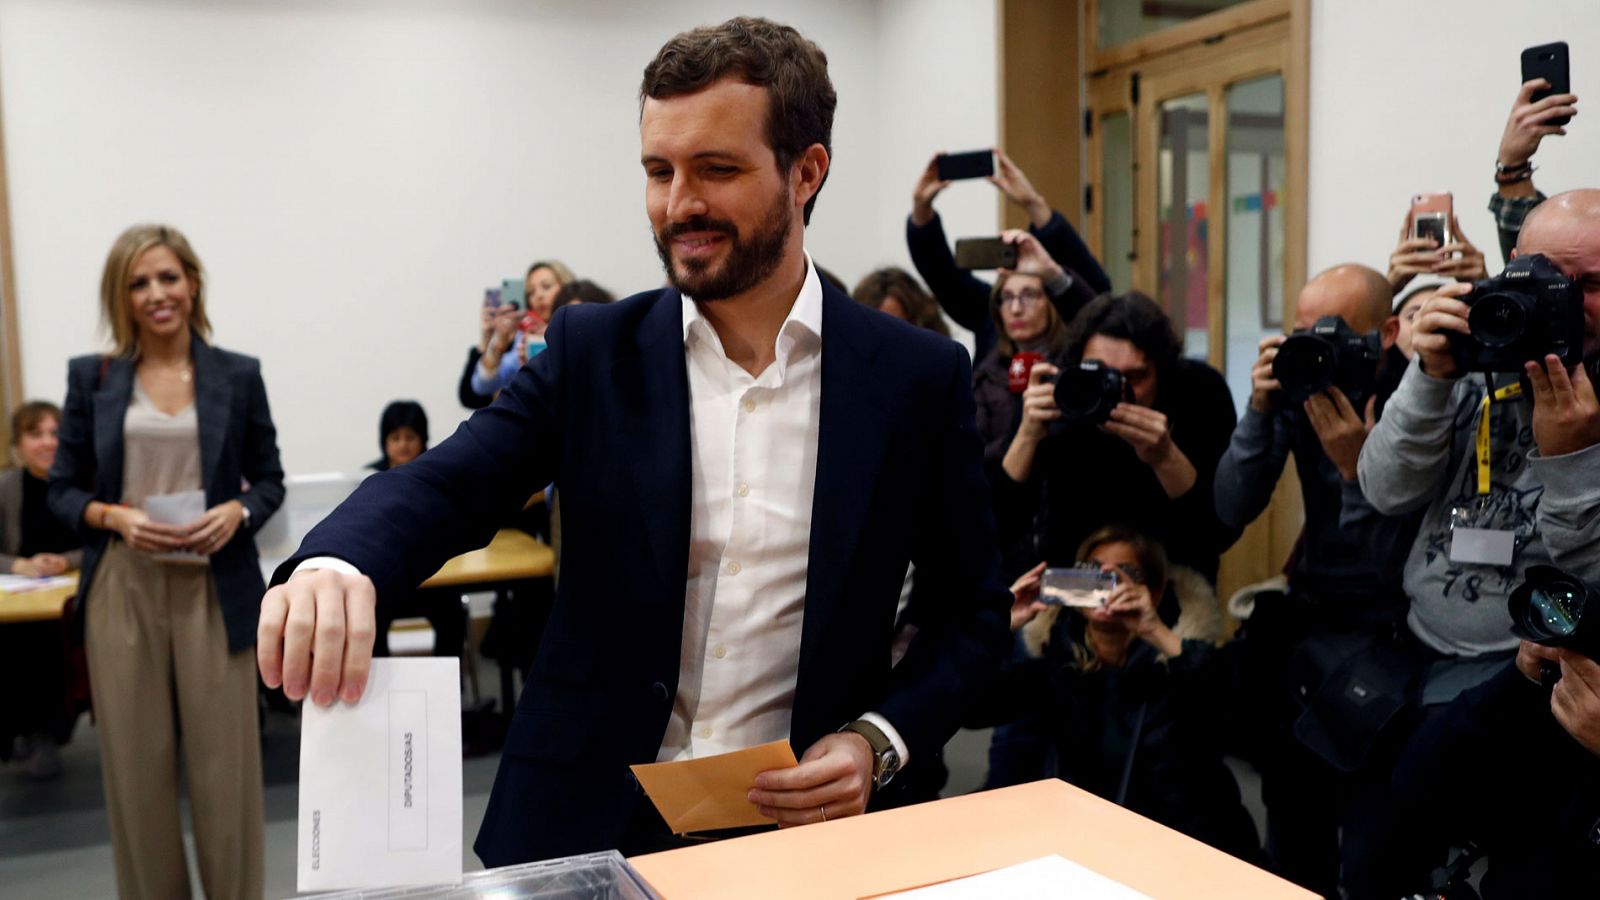 Elecciones Generales 2019 del 10N: Pablo Casado vota en el colegio del Pilar de Madrid - RTVE.es